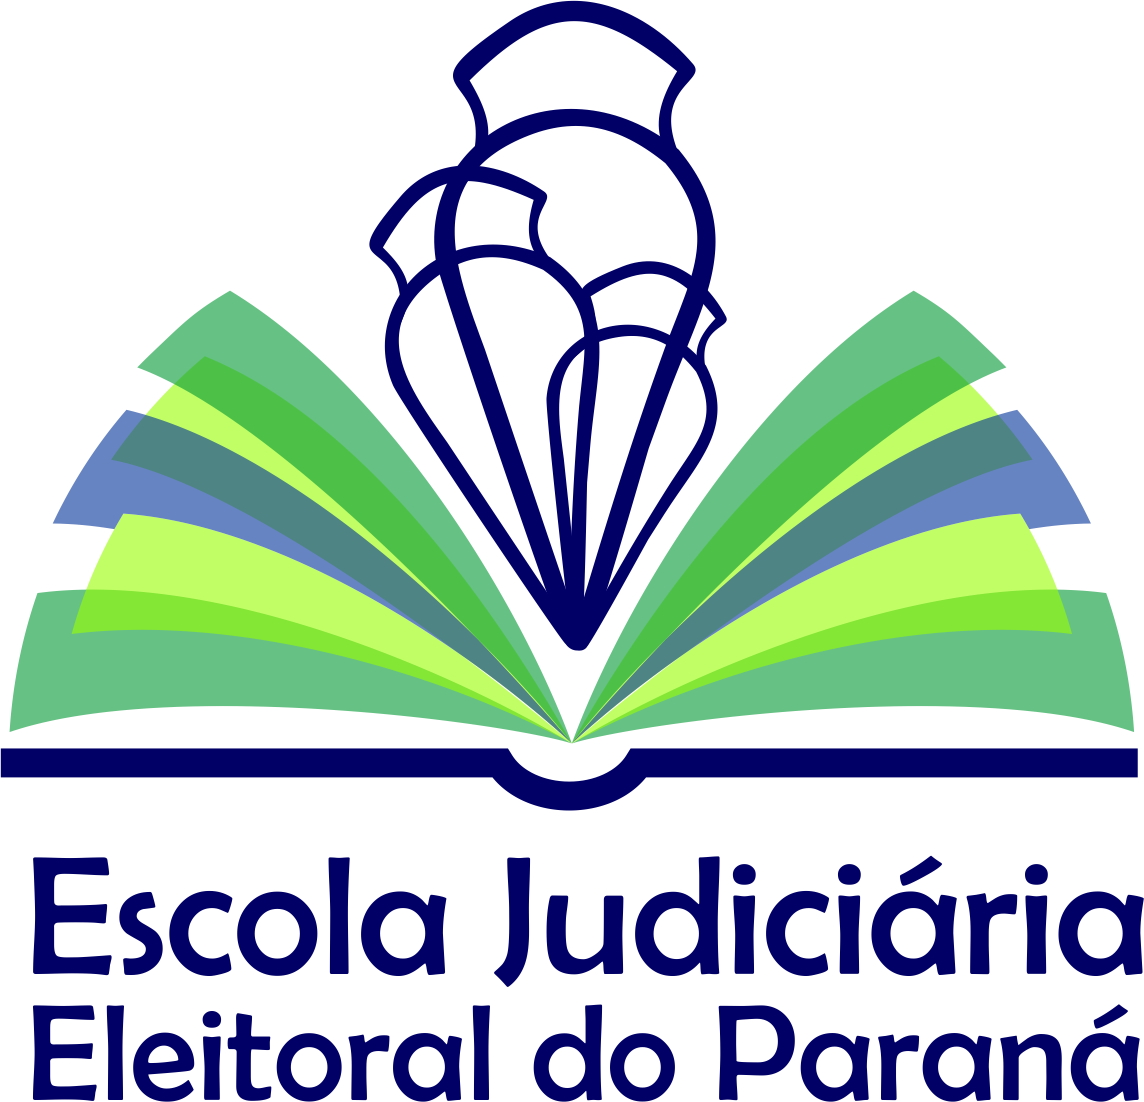 Dra. Flávia Viana assume direção executiva da Escola Judiciária Eleitoral  do Paraná — Tribunal Regional Eleitoral do Paraná